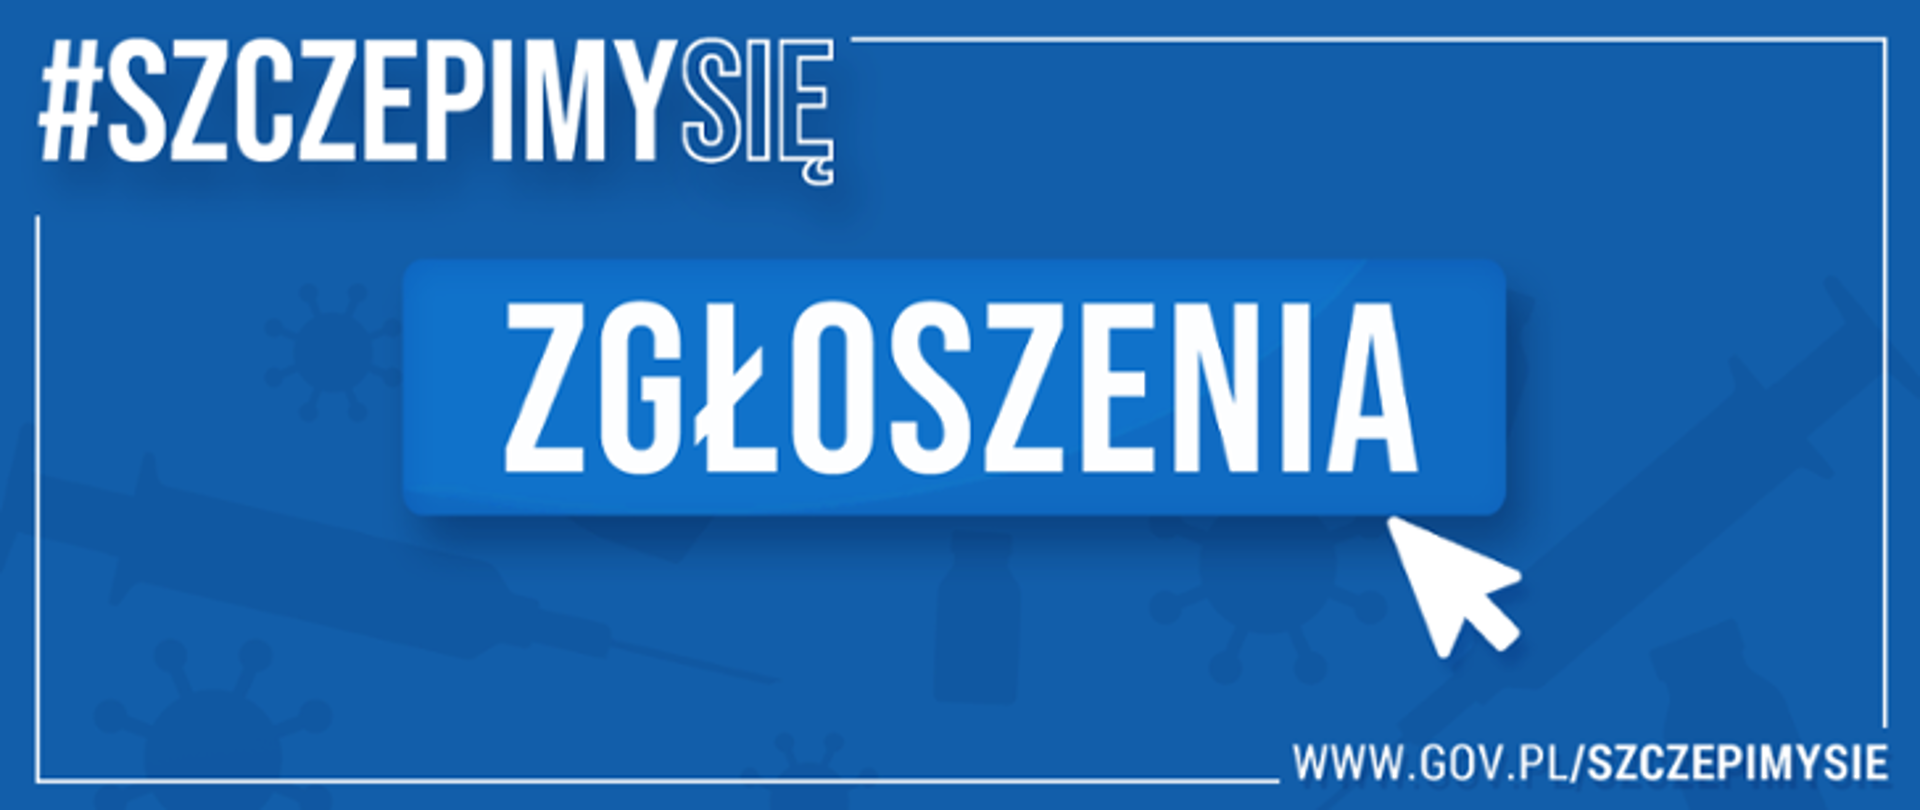 Od 15 stycznia zgłoś się na szczepienie przeciw COVID-19 - Wojewódzka  Stacja Sanitarno-Epidemiologiczna w Bydgoszczy - Portal Gov.pl